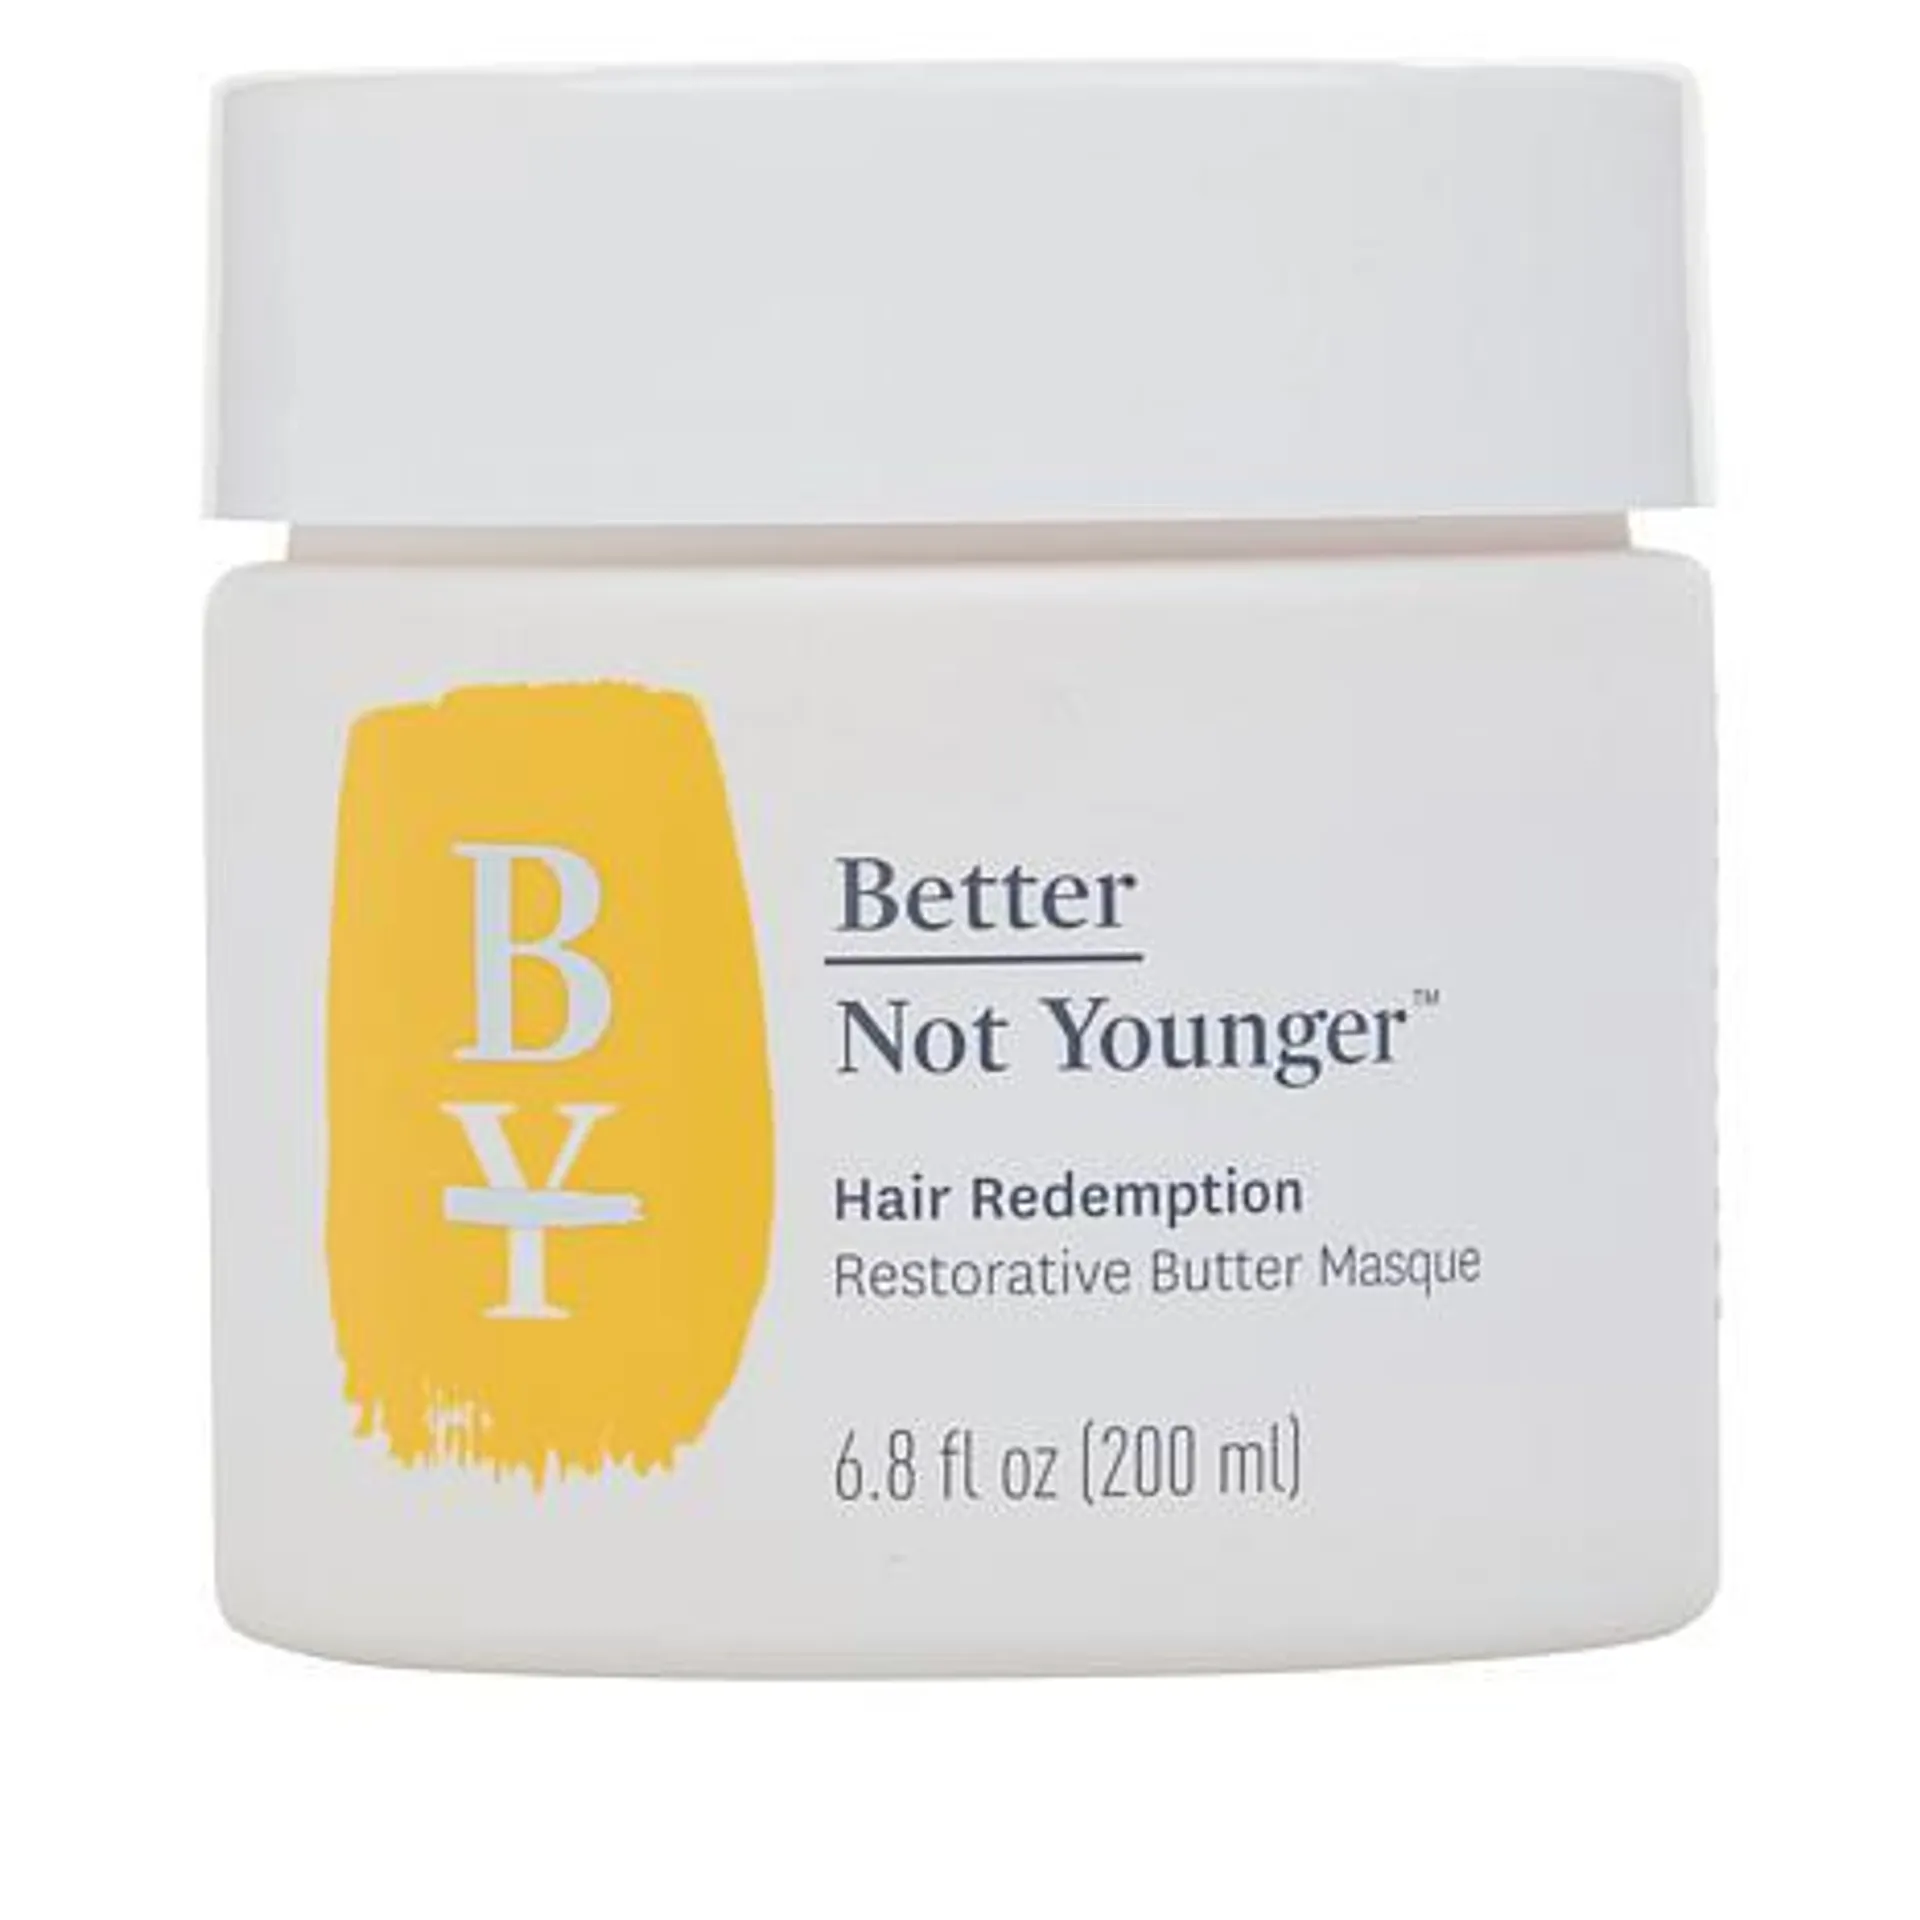 BetterNotYounger Hair Redemption Restorative Butter Masque